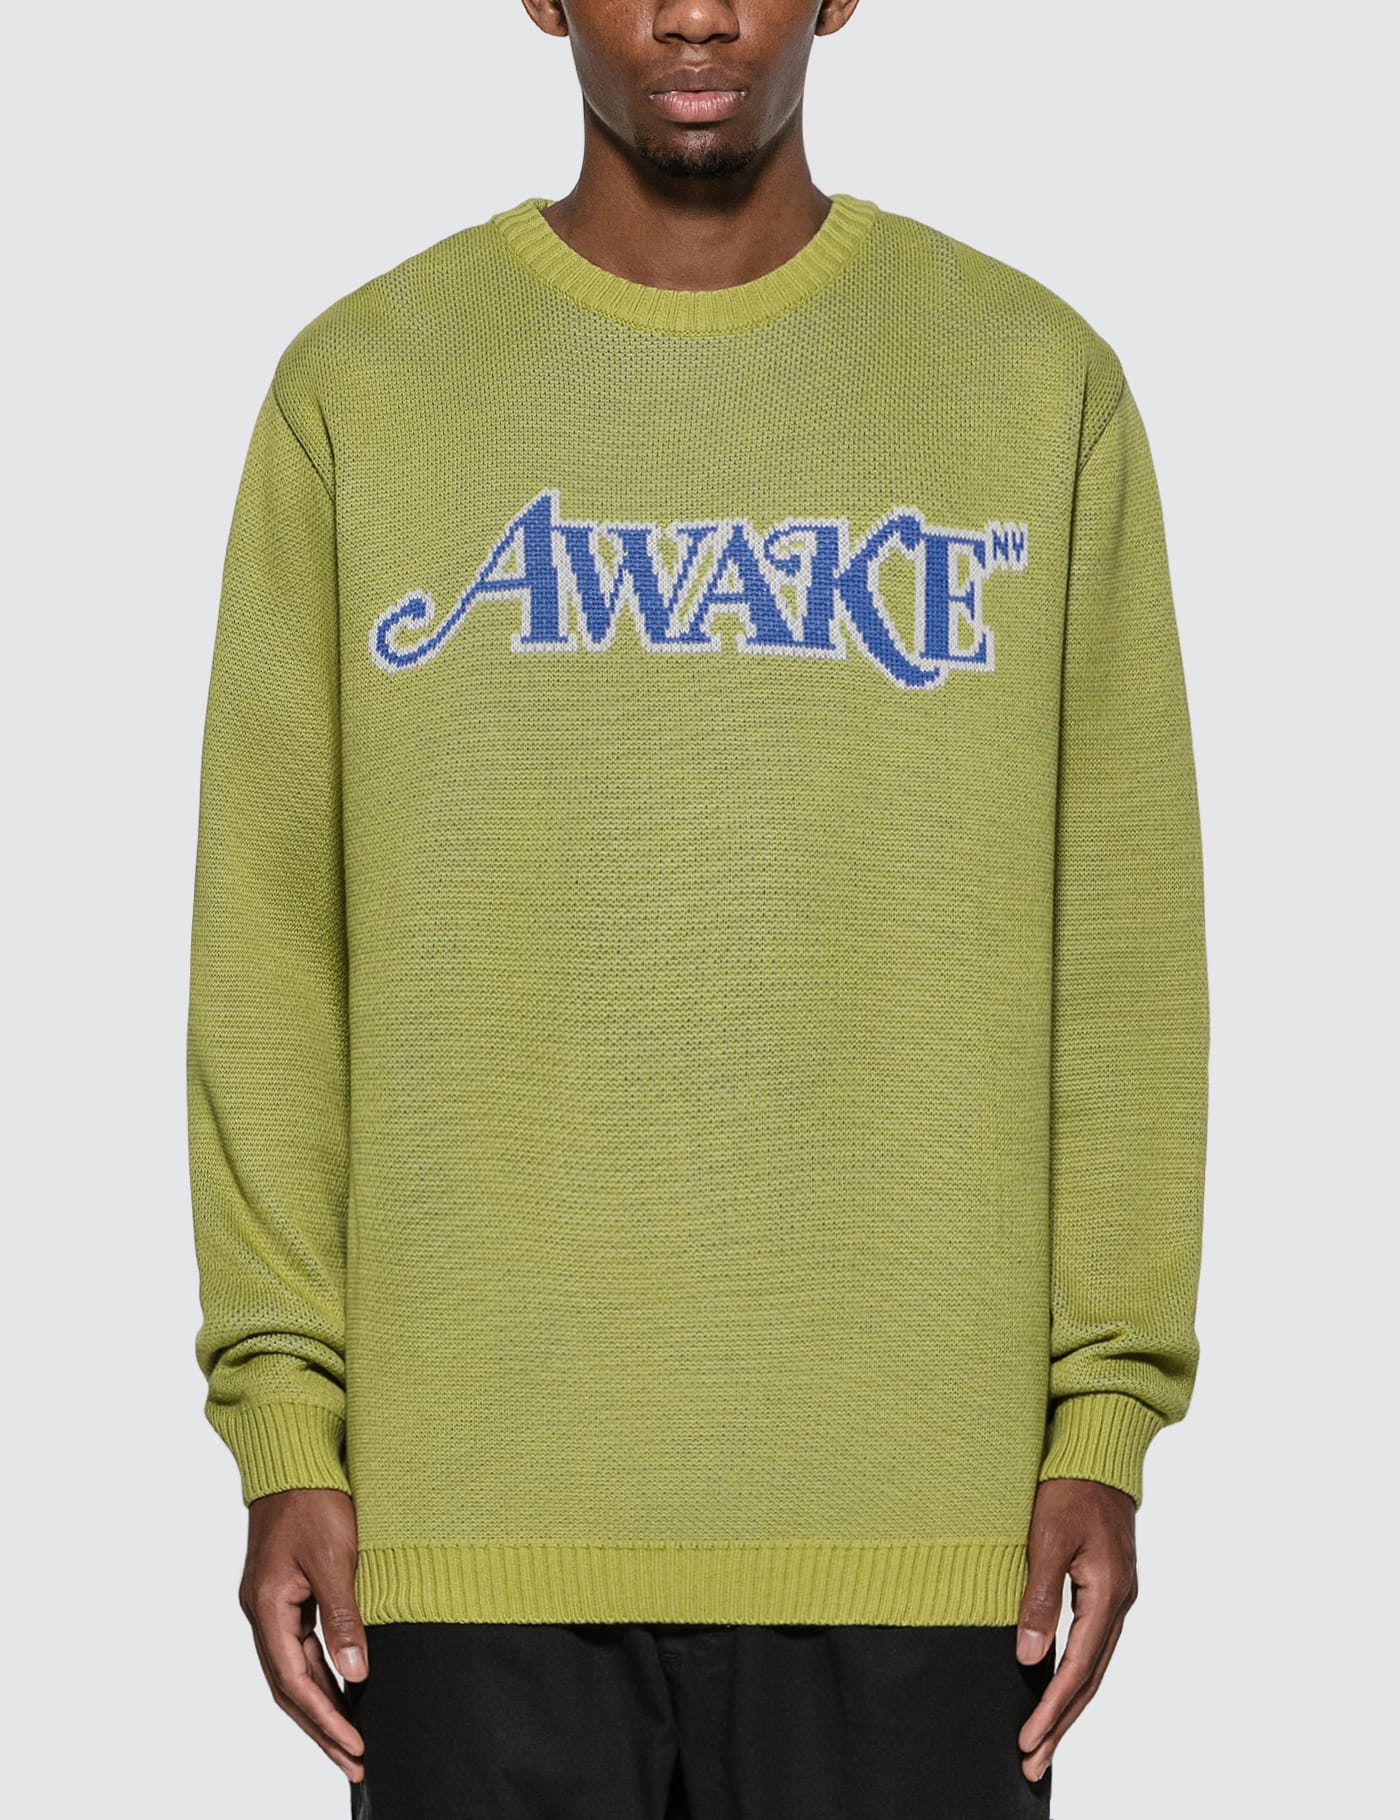 Awake NY - Classic Logo Intarsia Sweater | HBX - HYPEBEAST 为您